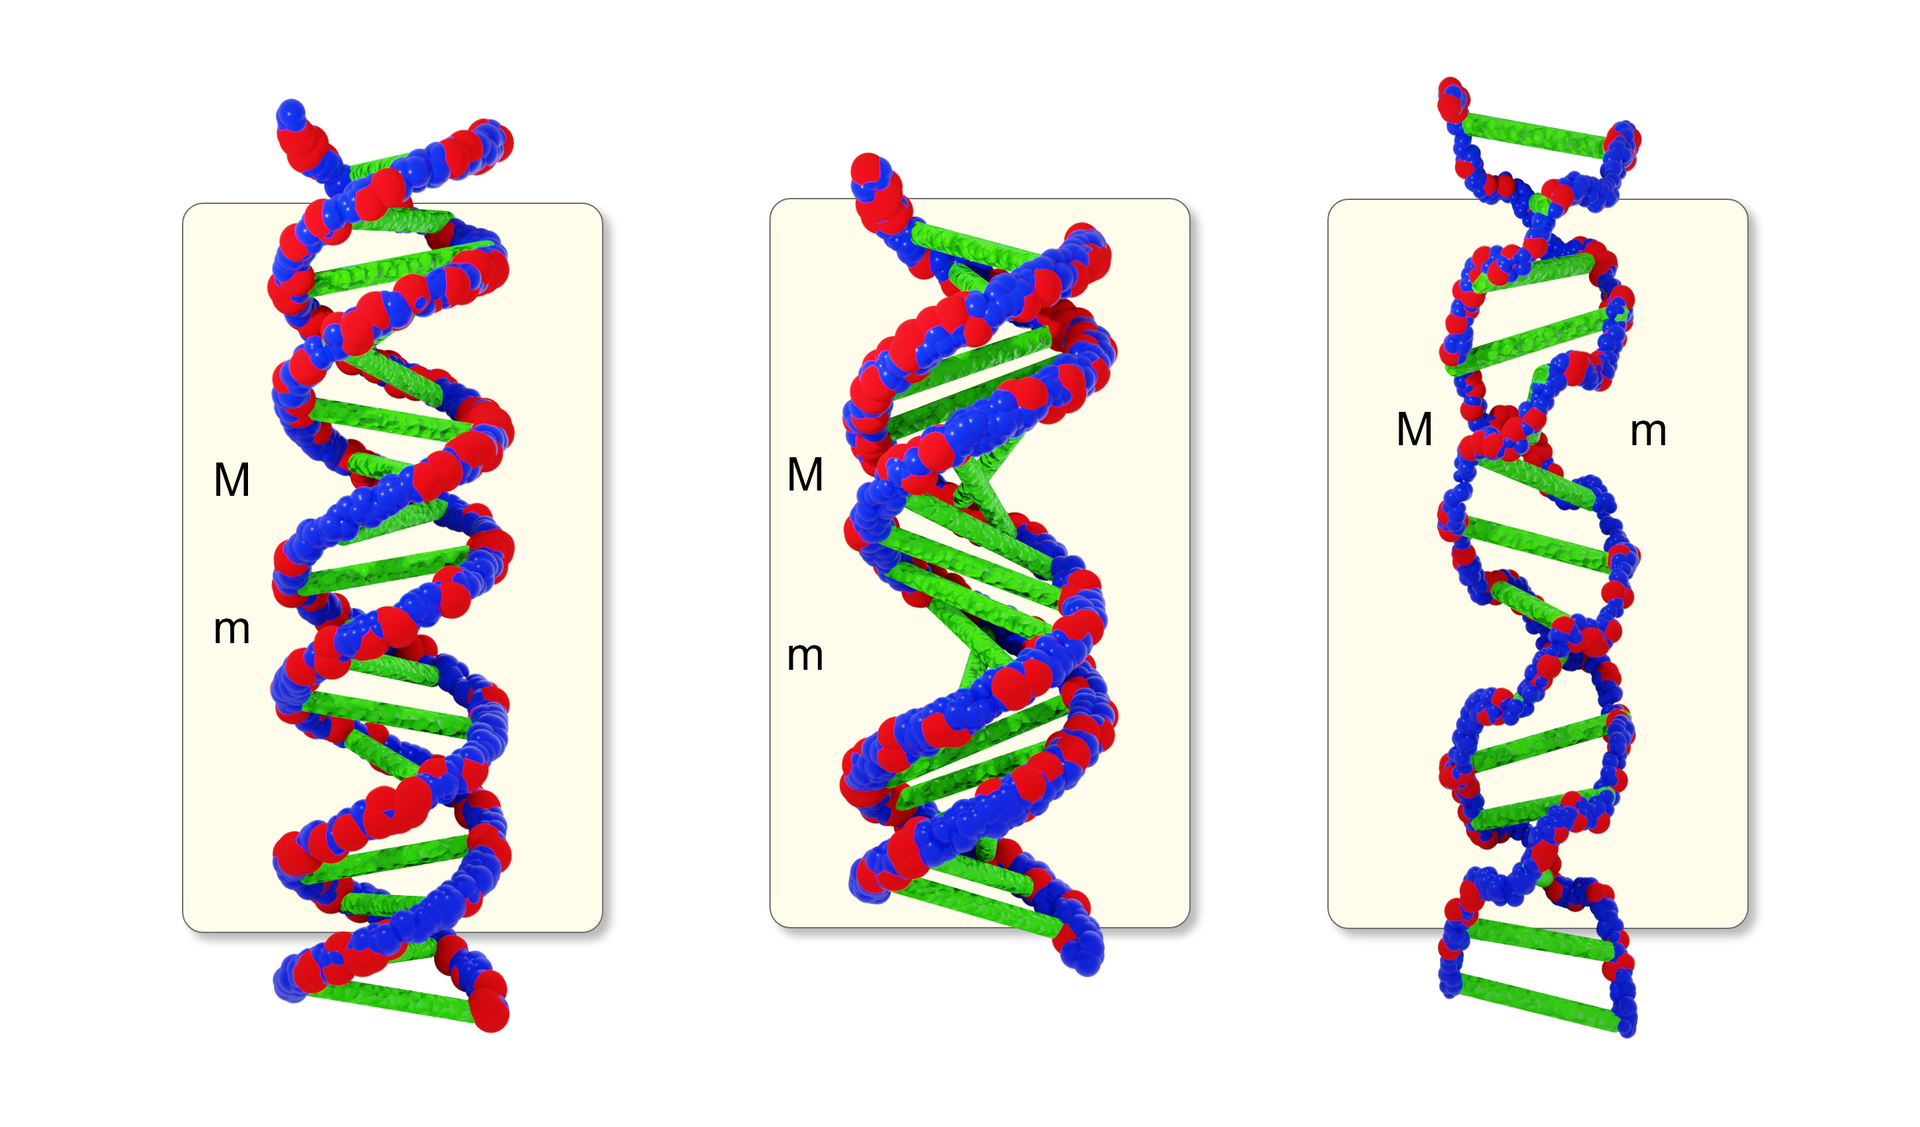 Schemat składający się z trzech rysunków przedstawia formy DNA, kolejno: B, A, Z. Niebieskim i czerwonym kolorem na łańcuchach podwójnej helisy oznaczono rdzenie cukrowo‑fosforanowe obu łańcuchów, a zielonym na poziomych, łączących je liniach – zasady purynowe i pirymidynowe. W przypadku DNA‑A łańcuch podwójnej helisy jest bardziej skręcony, a zielone linie łączące zasady umieszczone pod kątem do łańcucha. W przypadku DNA‑Z łańcuch podwójnej helisy jest rozluźniony, a zielone linie łączące zasady rozstawione szerzej w stosunku do siebie; w odróżnieniu od pozostałych form łańcuch helisy jest lewoskrętny. Literami duże M i małe m oznaczono: duże M – widok wzdłuż osi helisy z wyraźnymi bruzdami (rowkami) dużymi, małe m – widok wzdłuż osi helisy z wyraźnymi bruzdami (rowkami) małymi. 